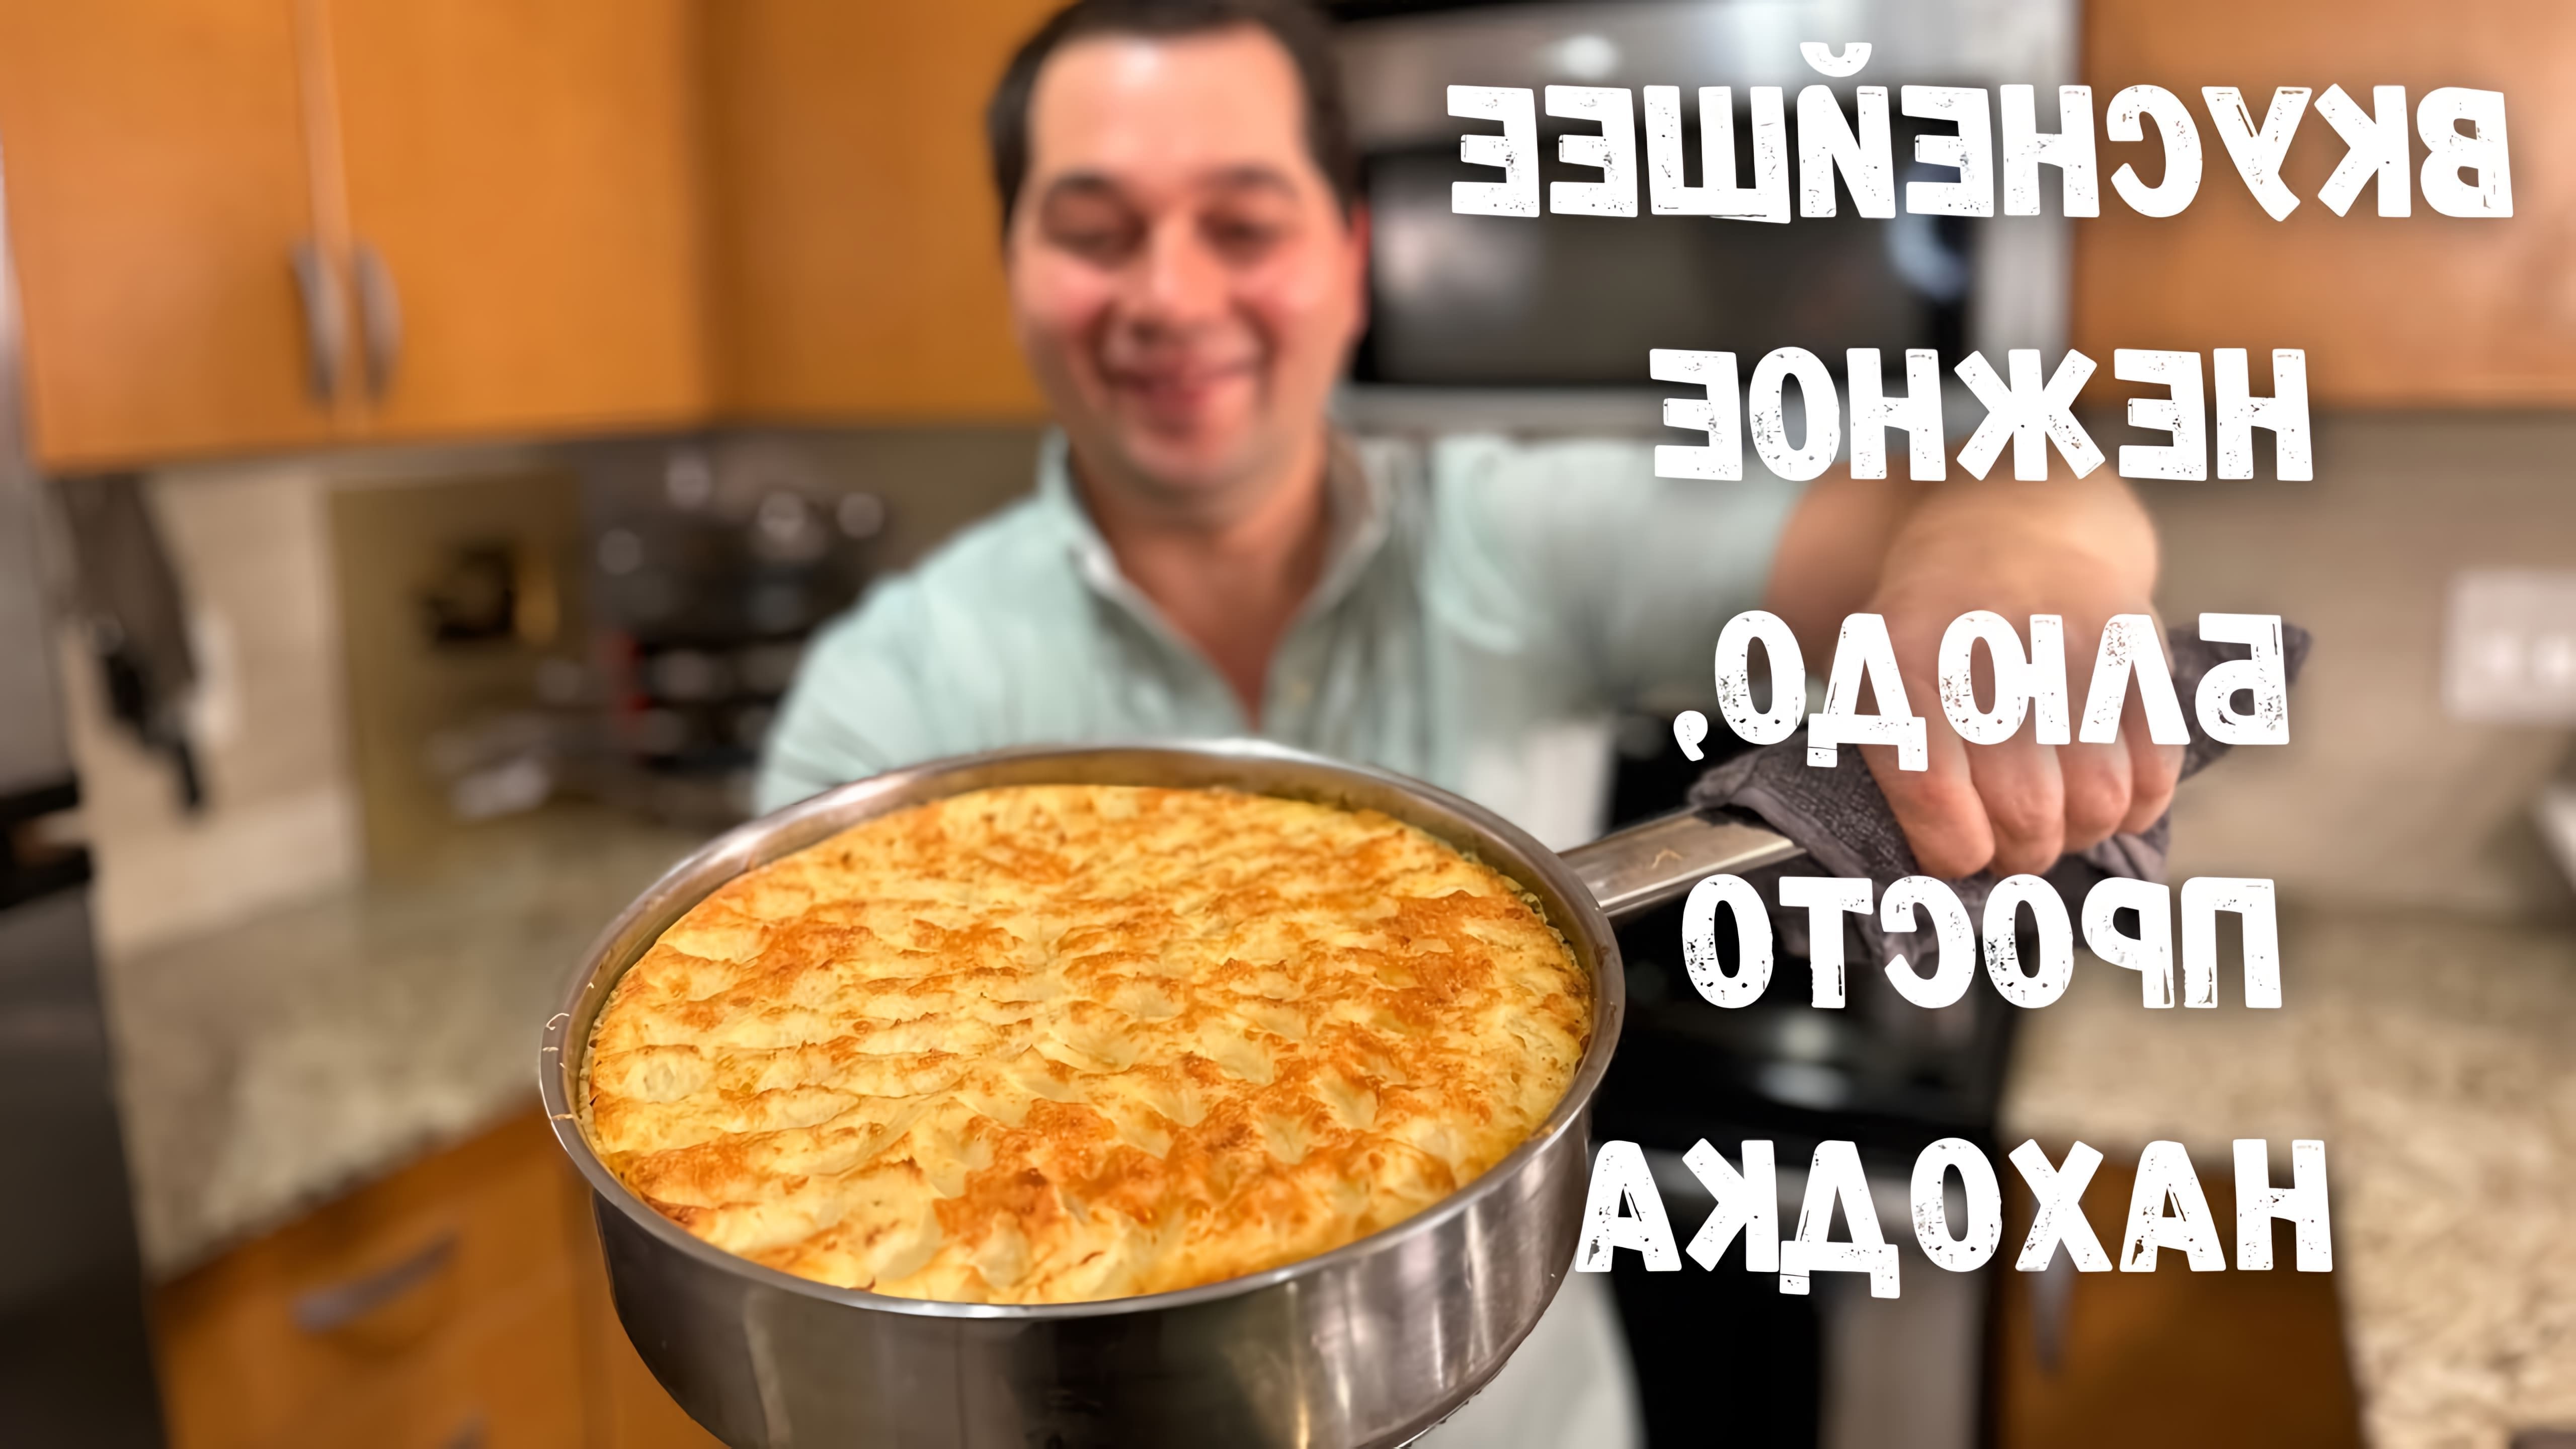 В этом видео демонстрируется рецепт мясной запеканки с фаршем и картофелем